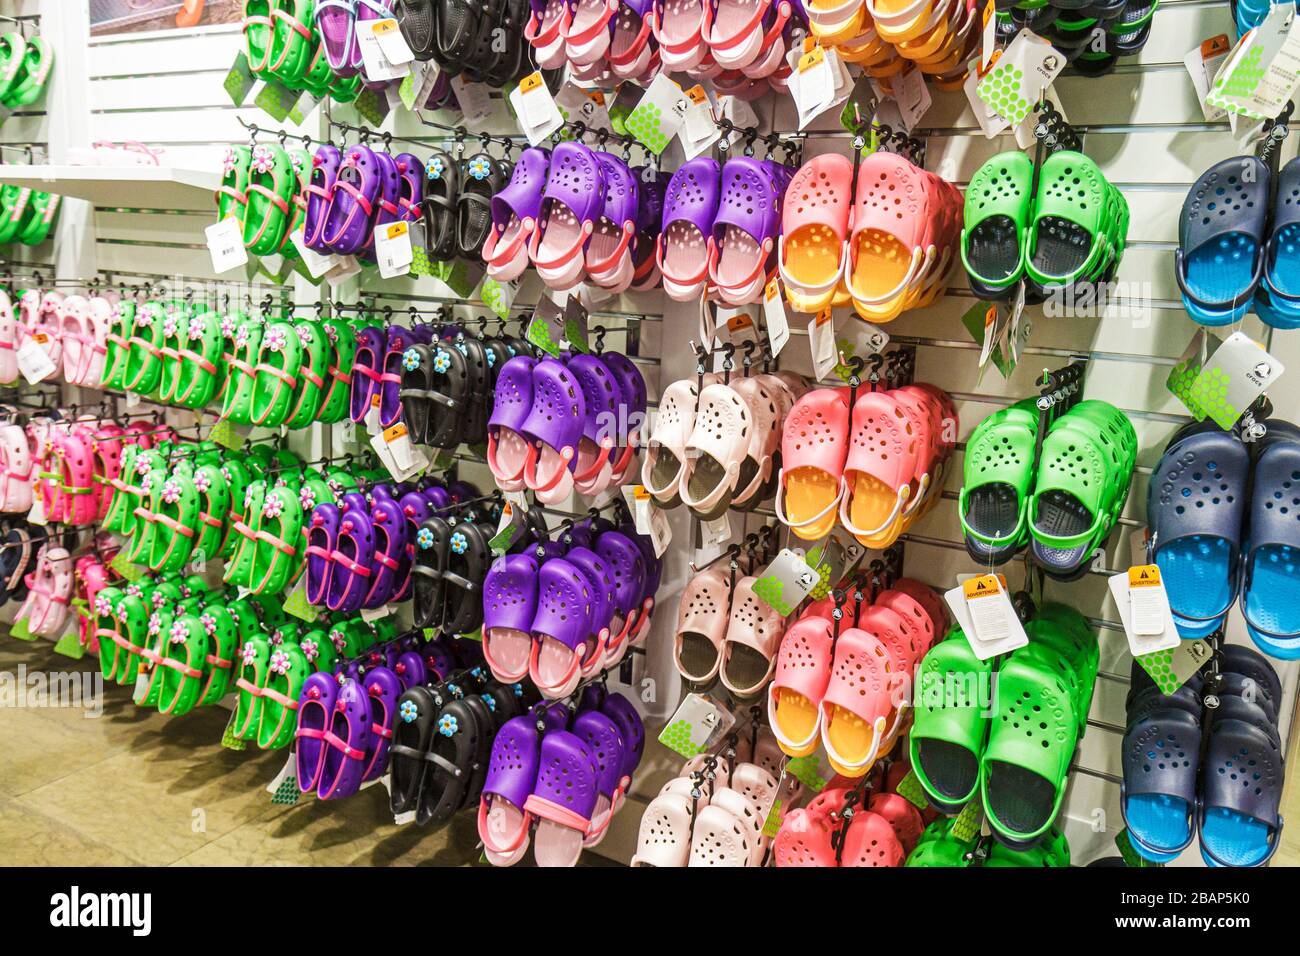 Crocs store in mall america fotografías e imágenes de alta resolución -  Alamy